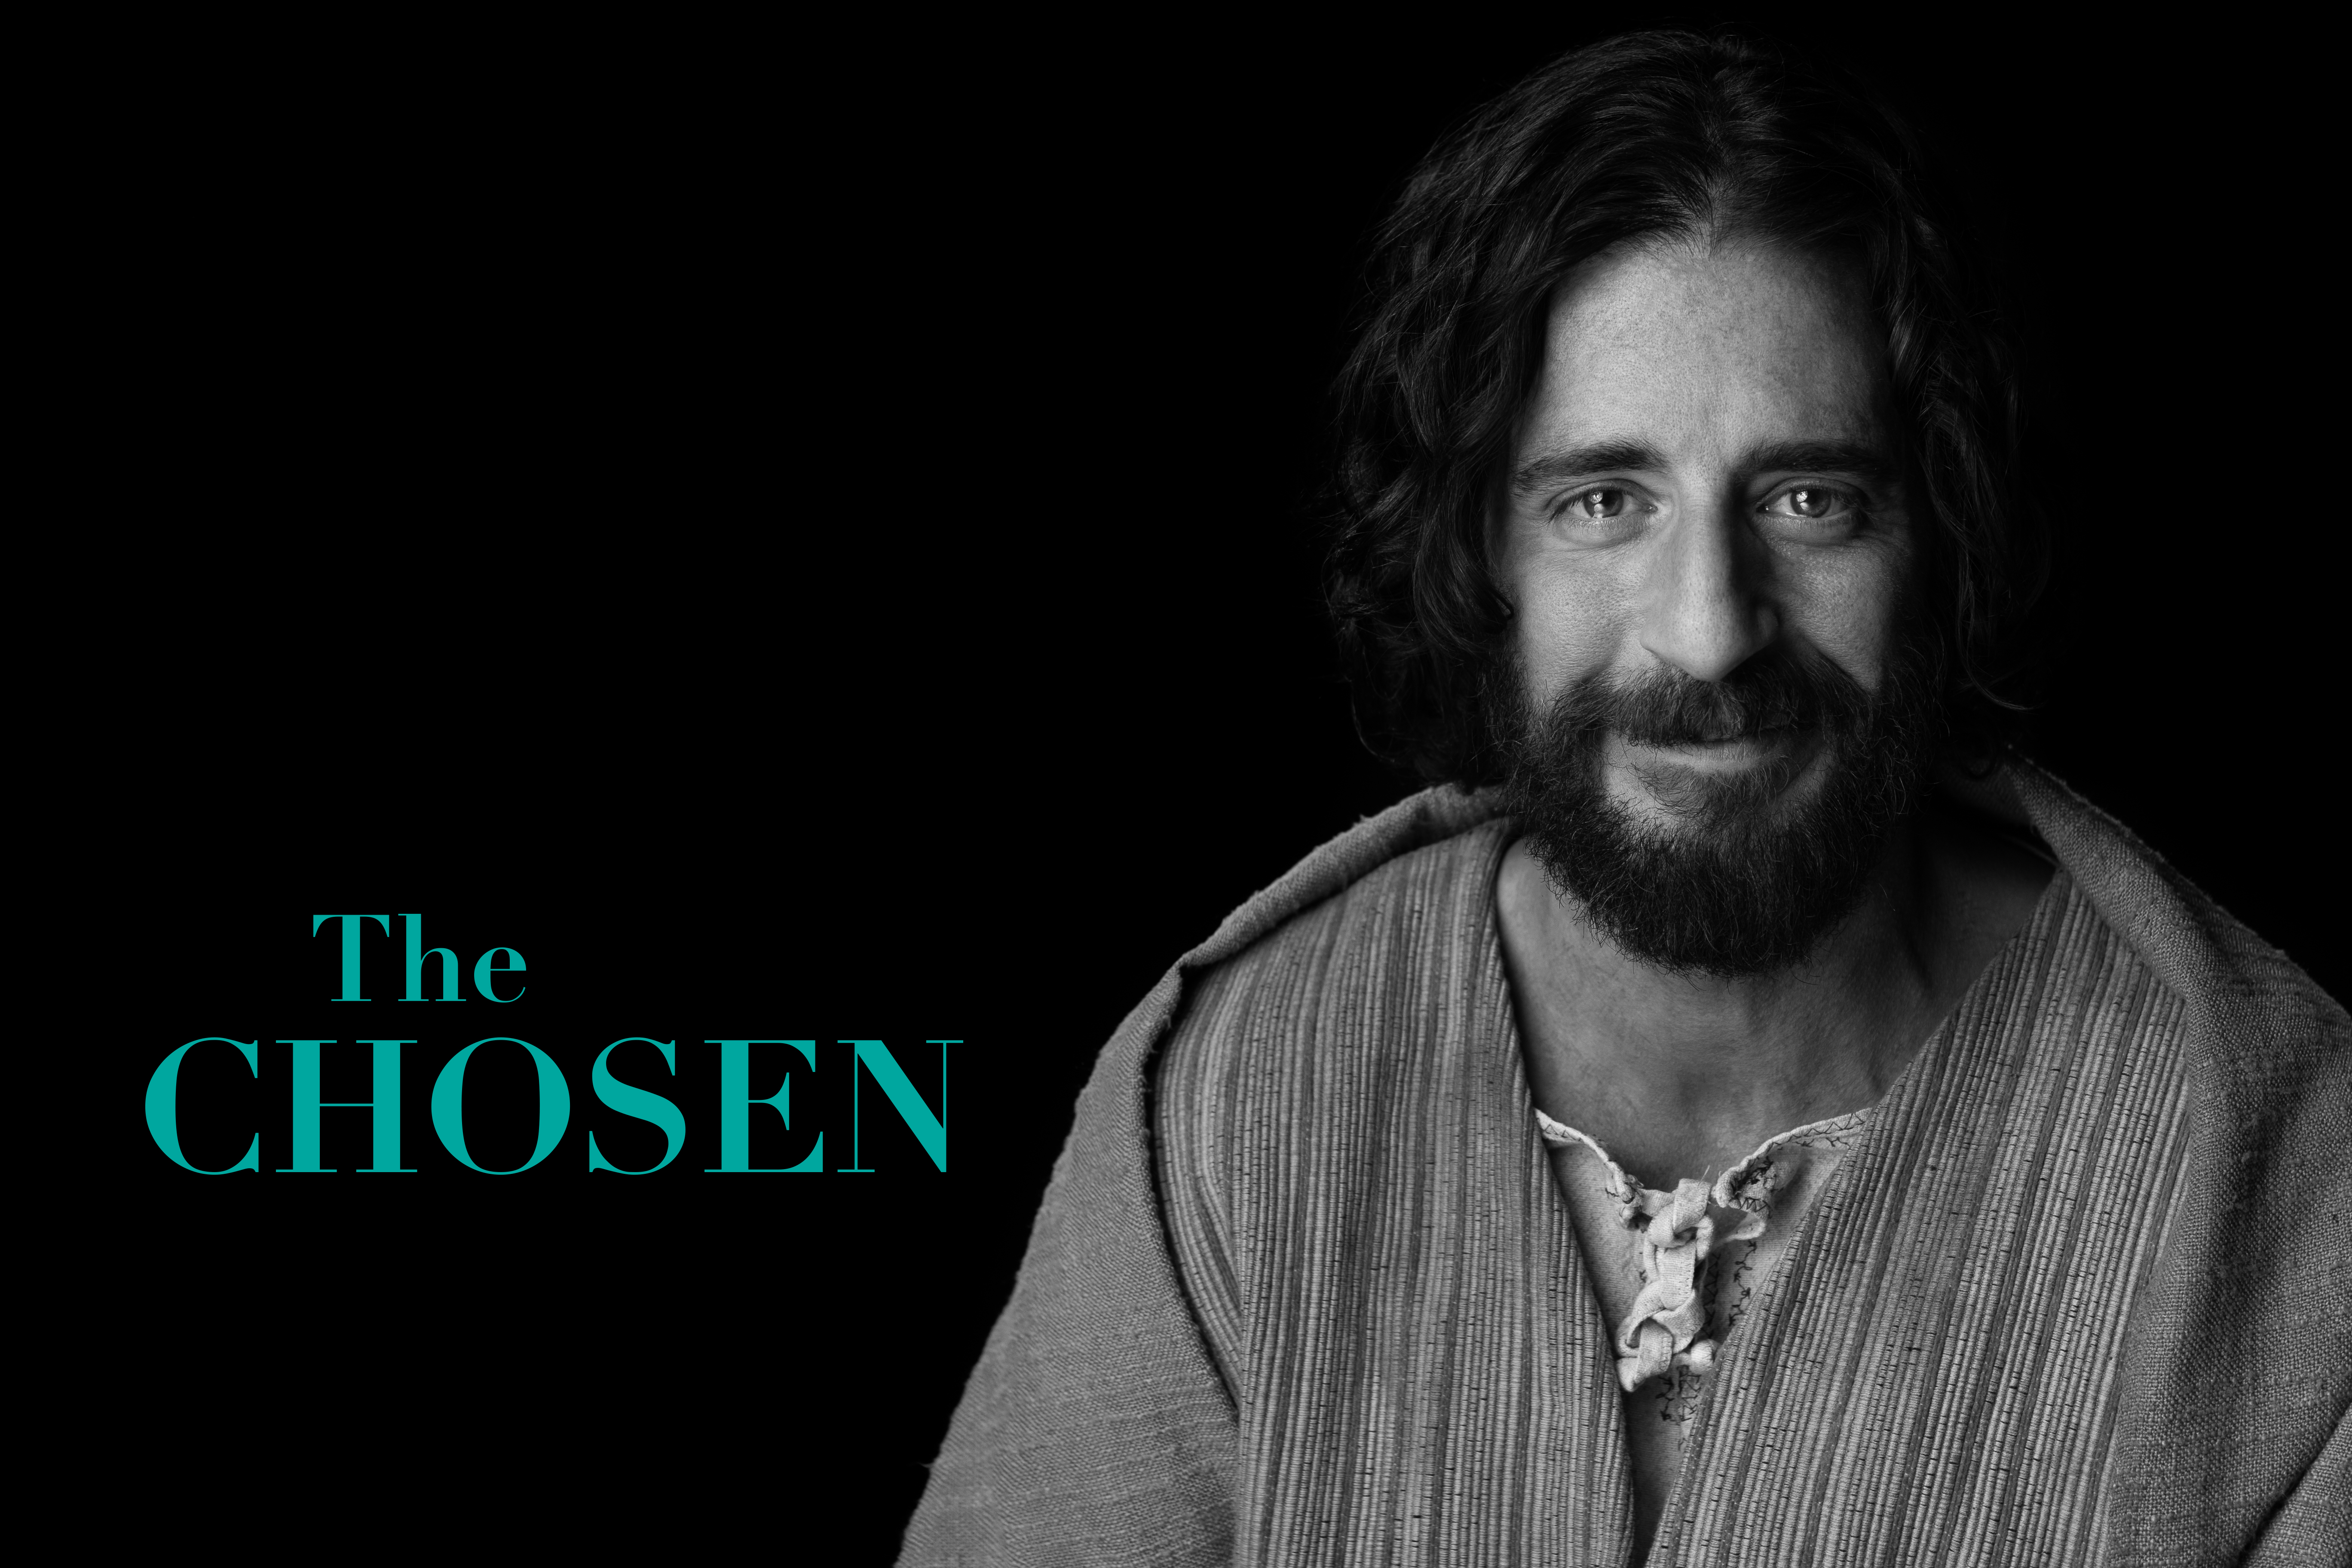 Svartvit porträttbild av Jesus karaktär i serien The Chosen